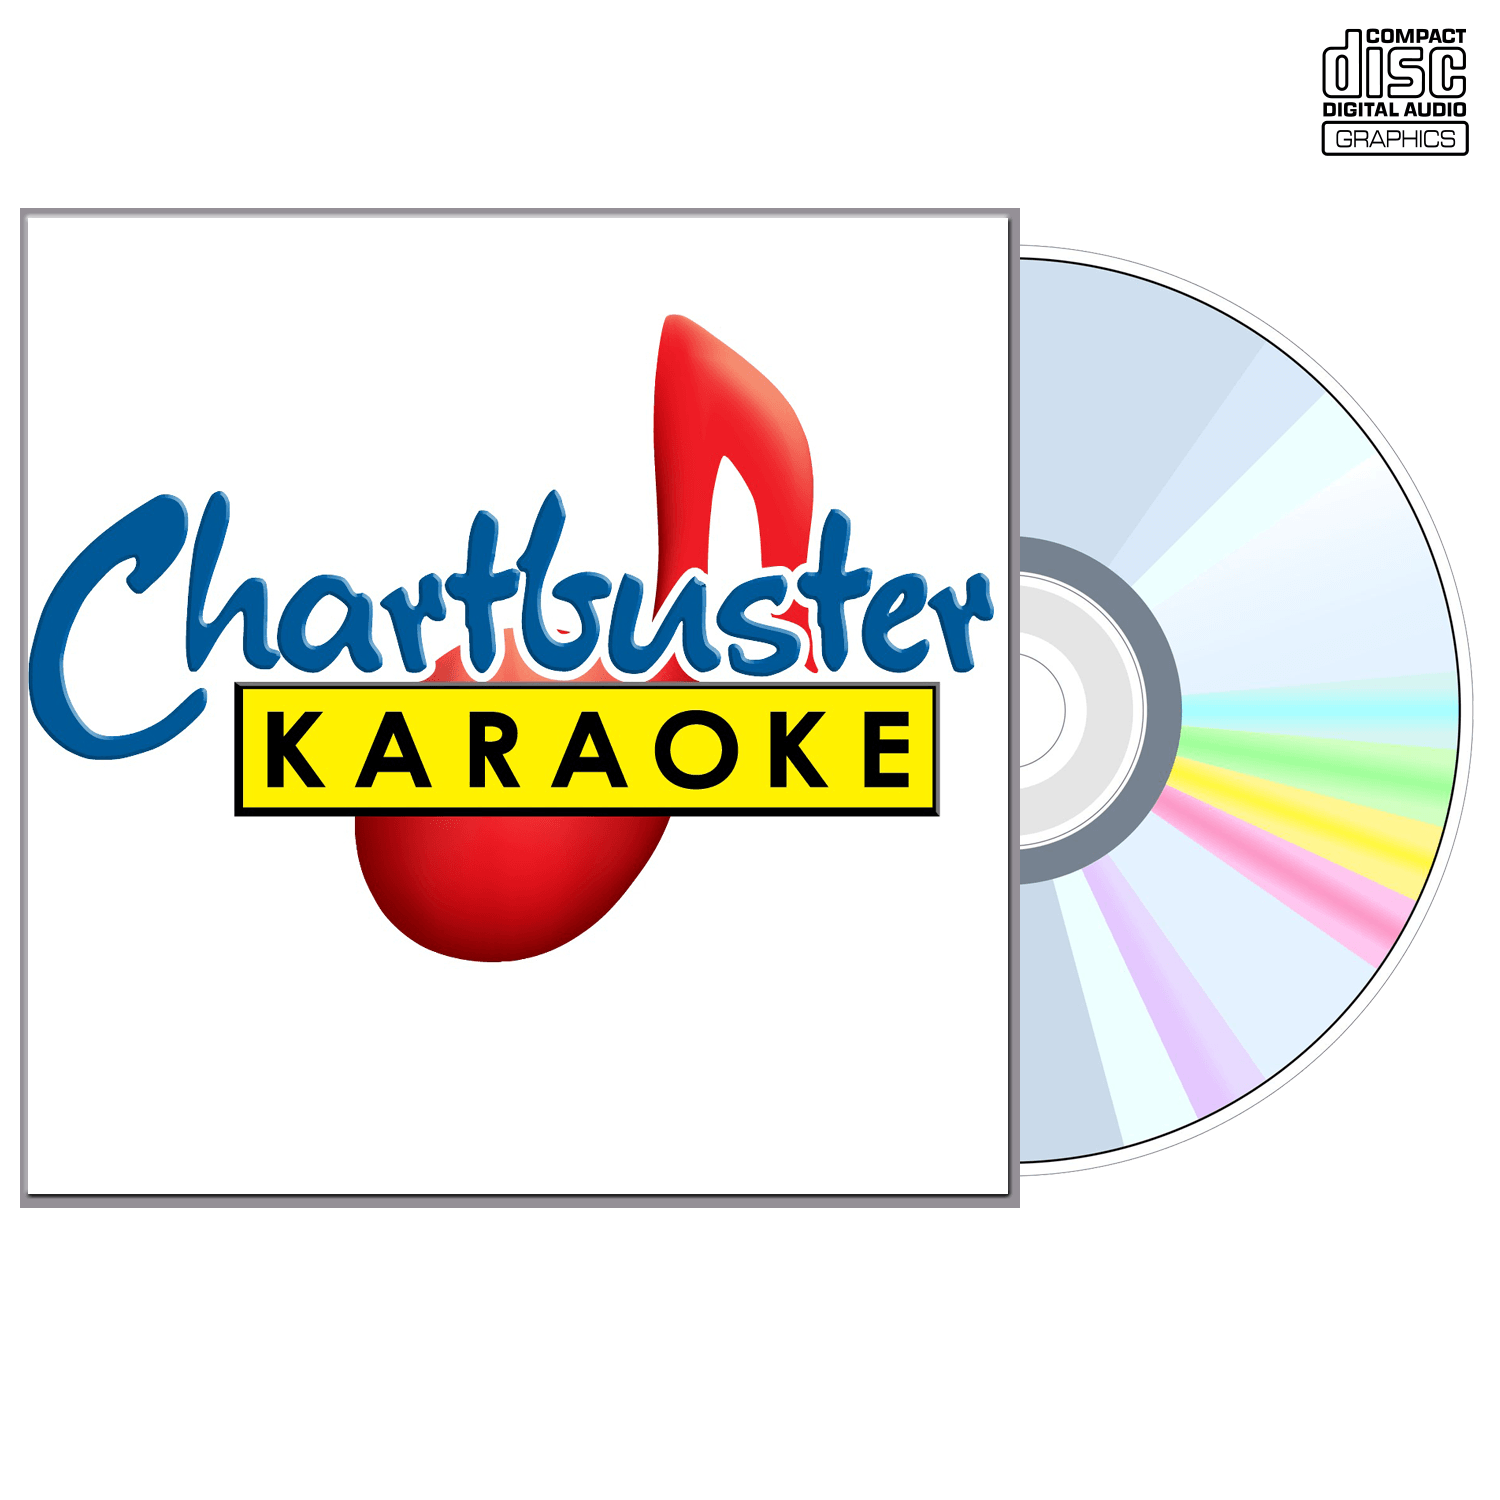 Prince - CD+G - Chartbuster Karaoke - Karaoke Home Entertainment